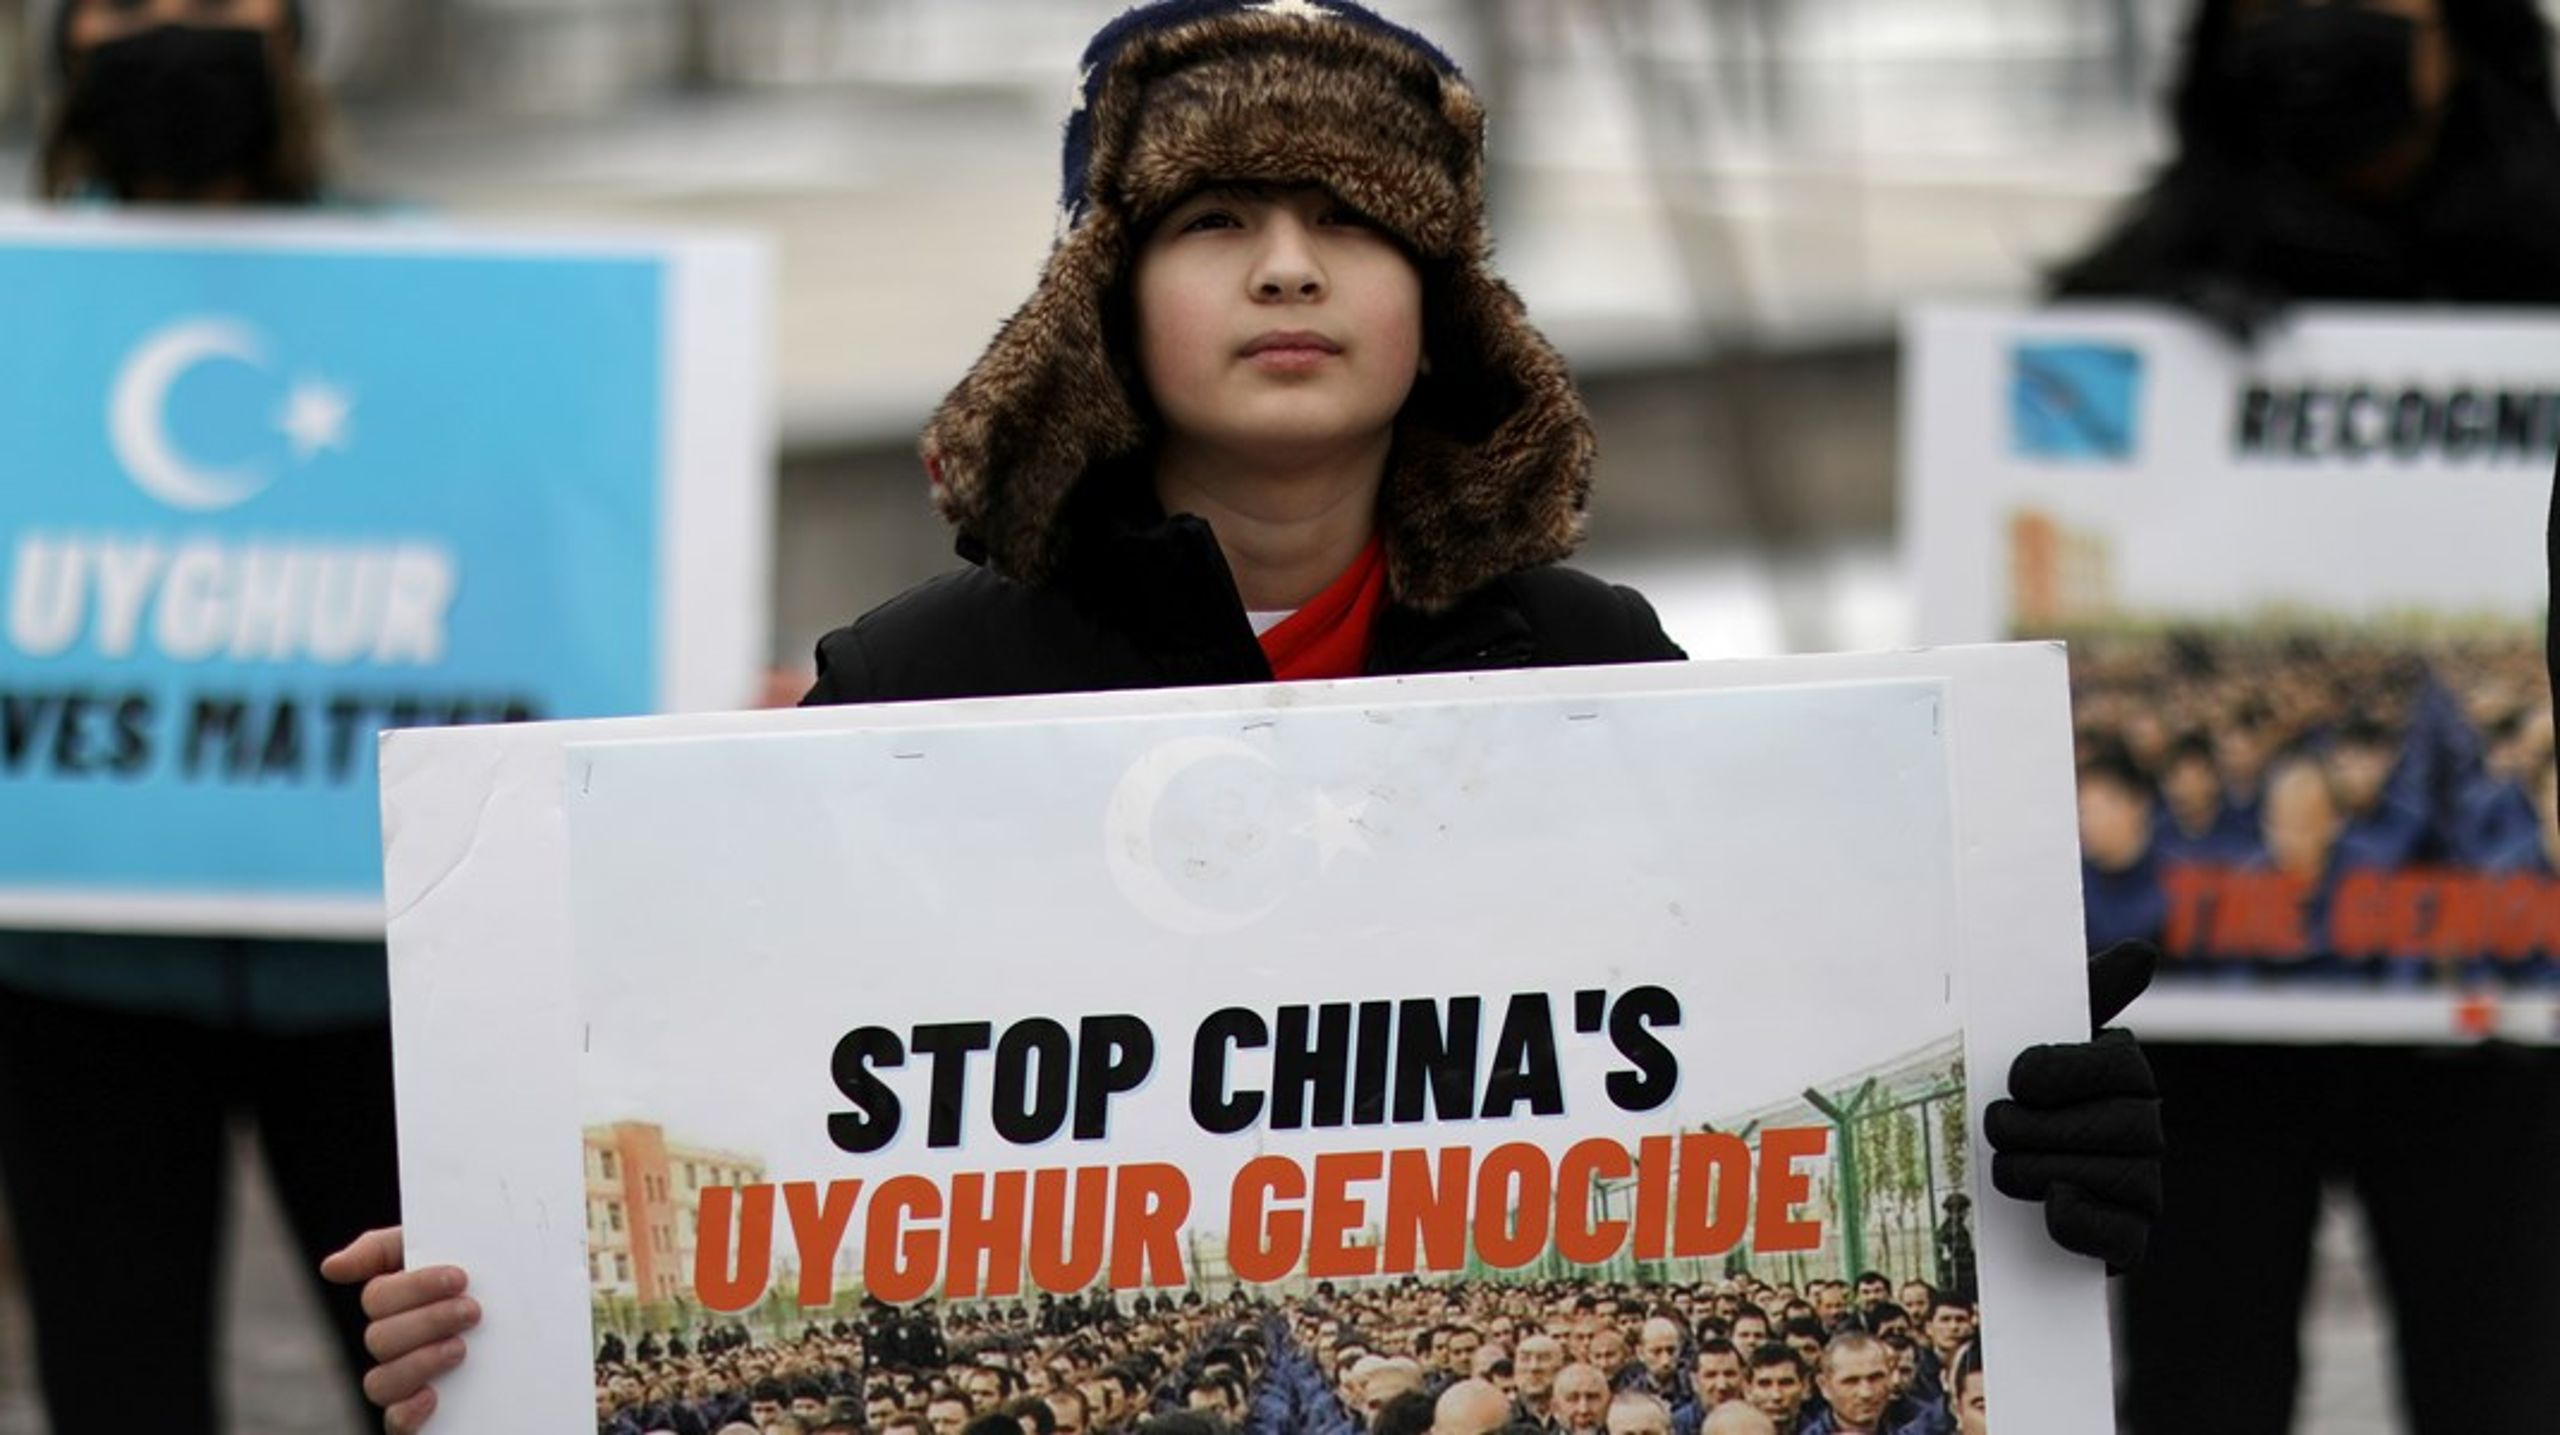 De kinesiske myndigheder må straks indstille forfølgelsen af det muslimske mindretral uighurerne i Xinjiang-provinsen. Samtidig må de give FN adgang til de såkaldte genopdragelseslejre, skriver Stinne Bech.&nbsp;